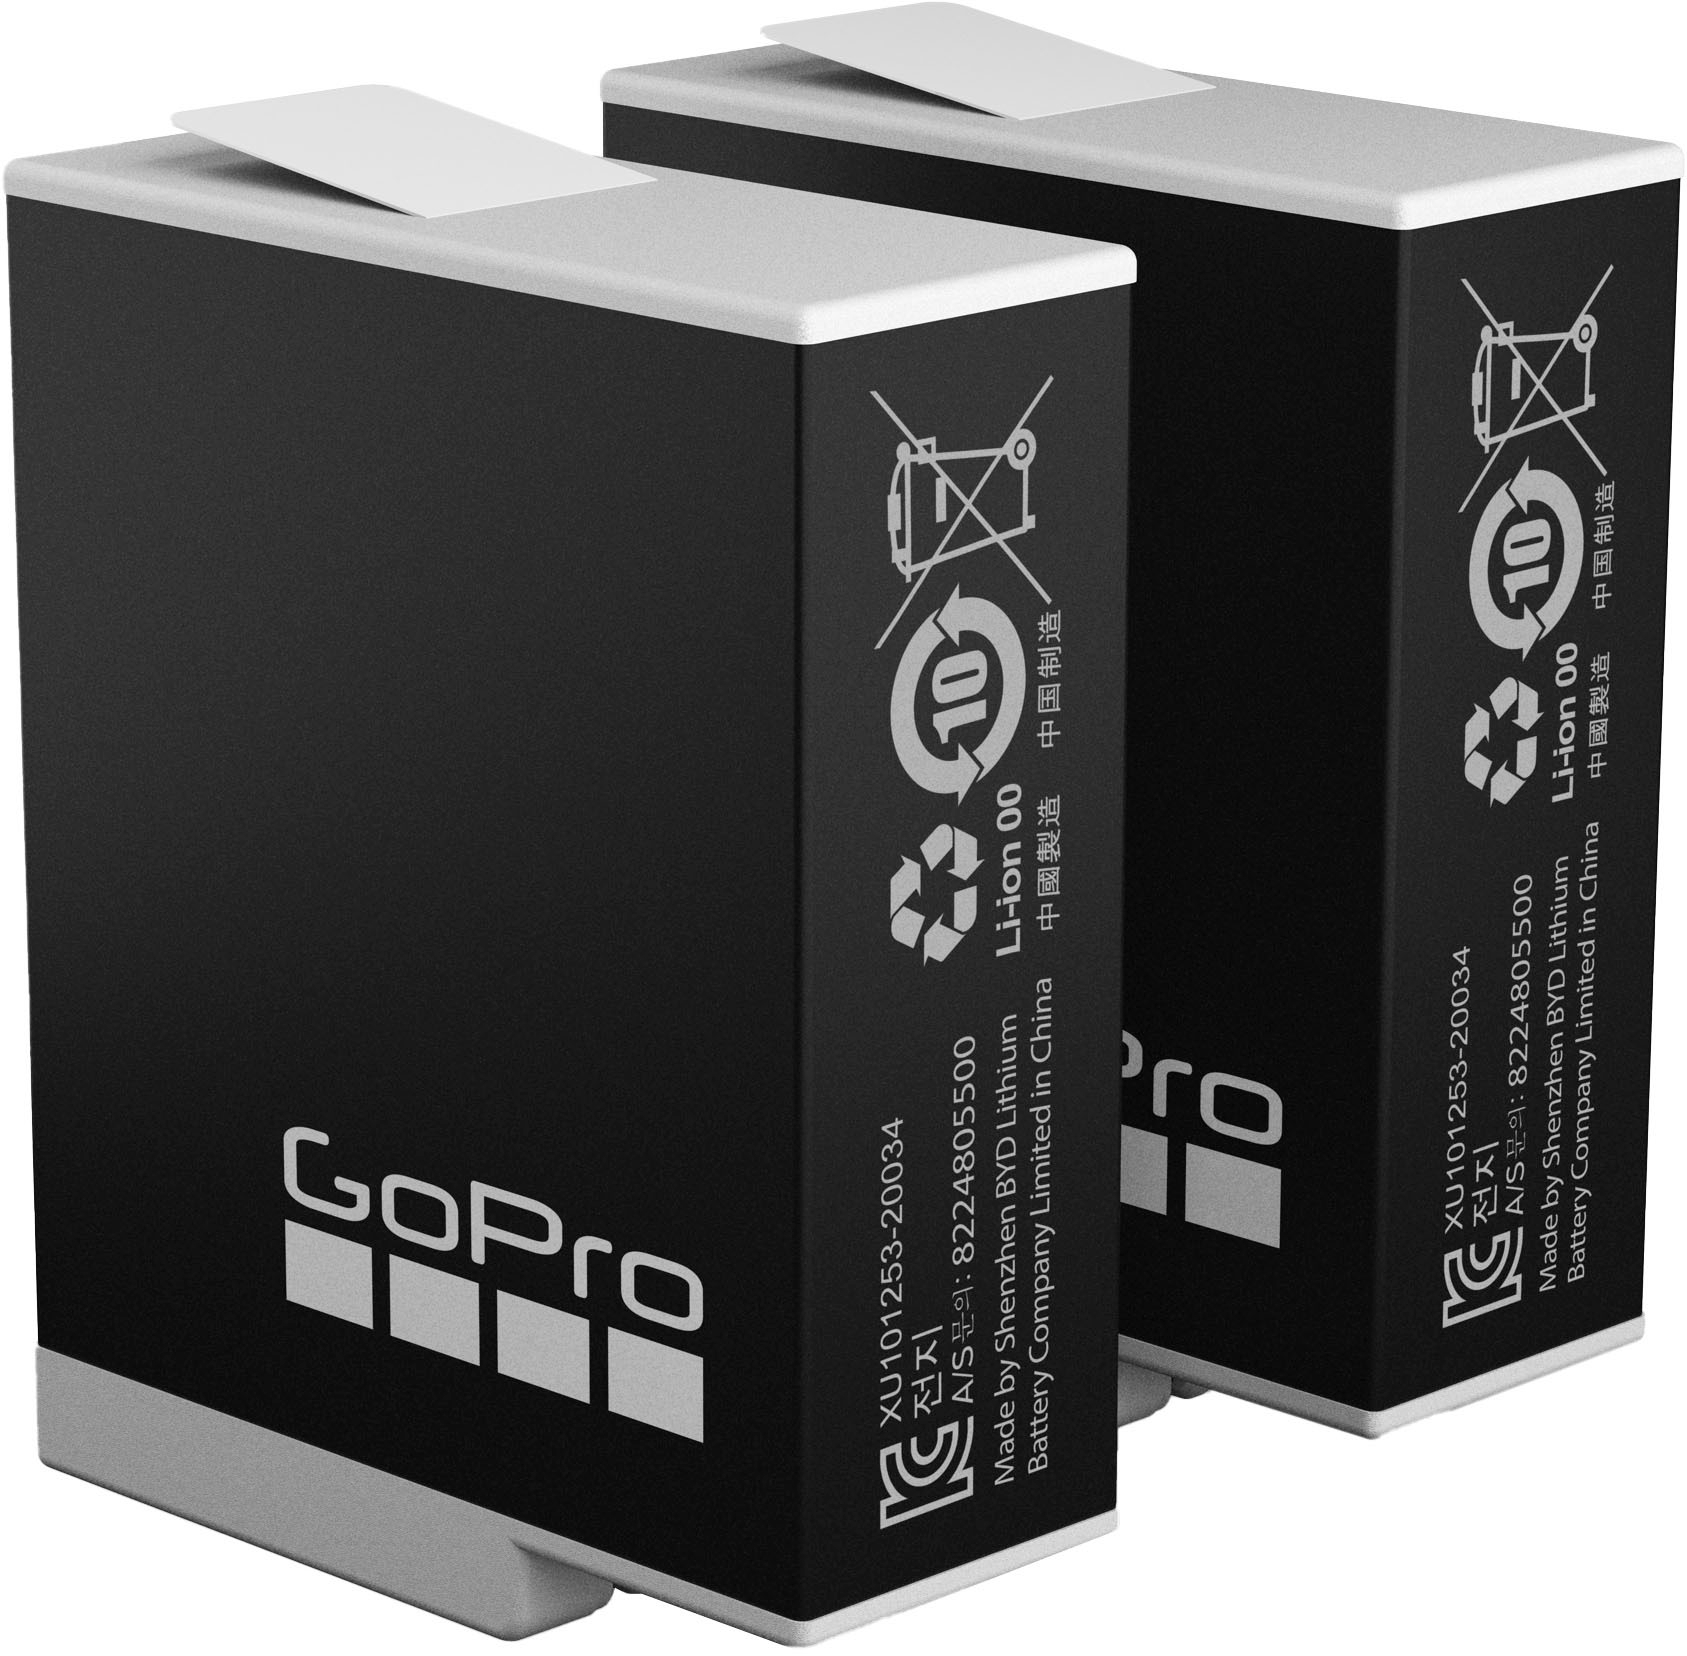 Extended Battery Module For GoPro HERO12, HERO11, Hero10 & HERO9